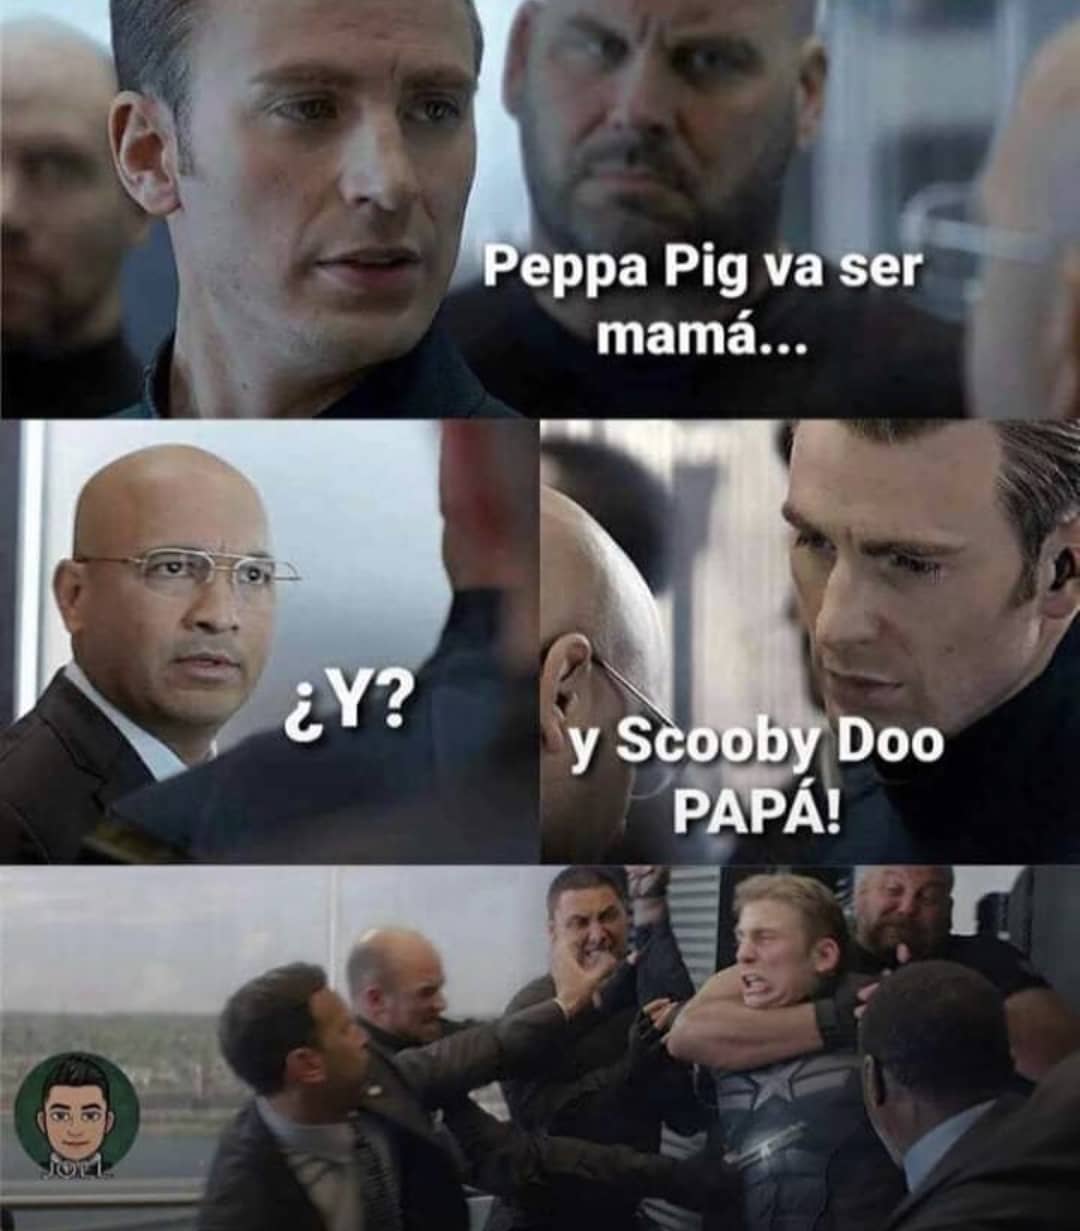 Peppa Pig va ser mamá...  ¿Y?  Y Scooby Doo papá!